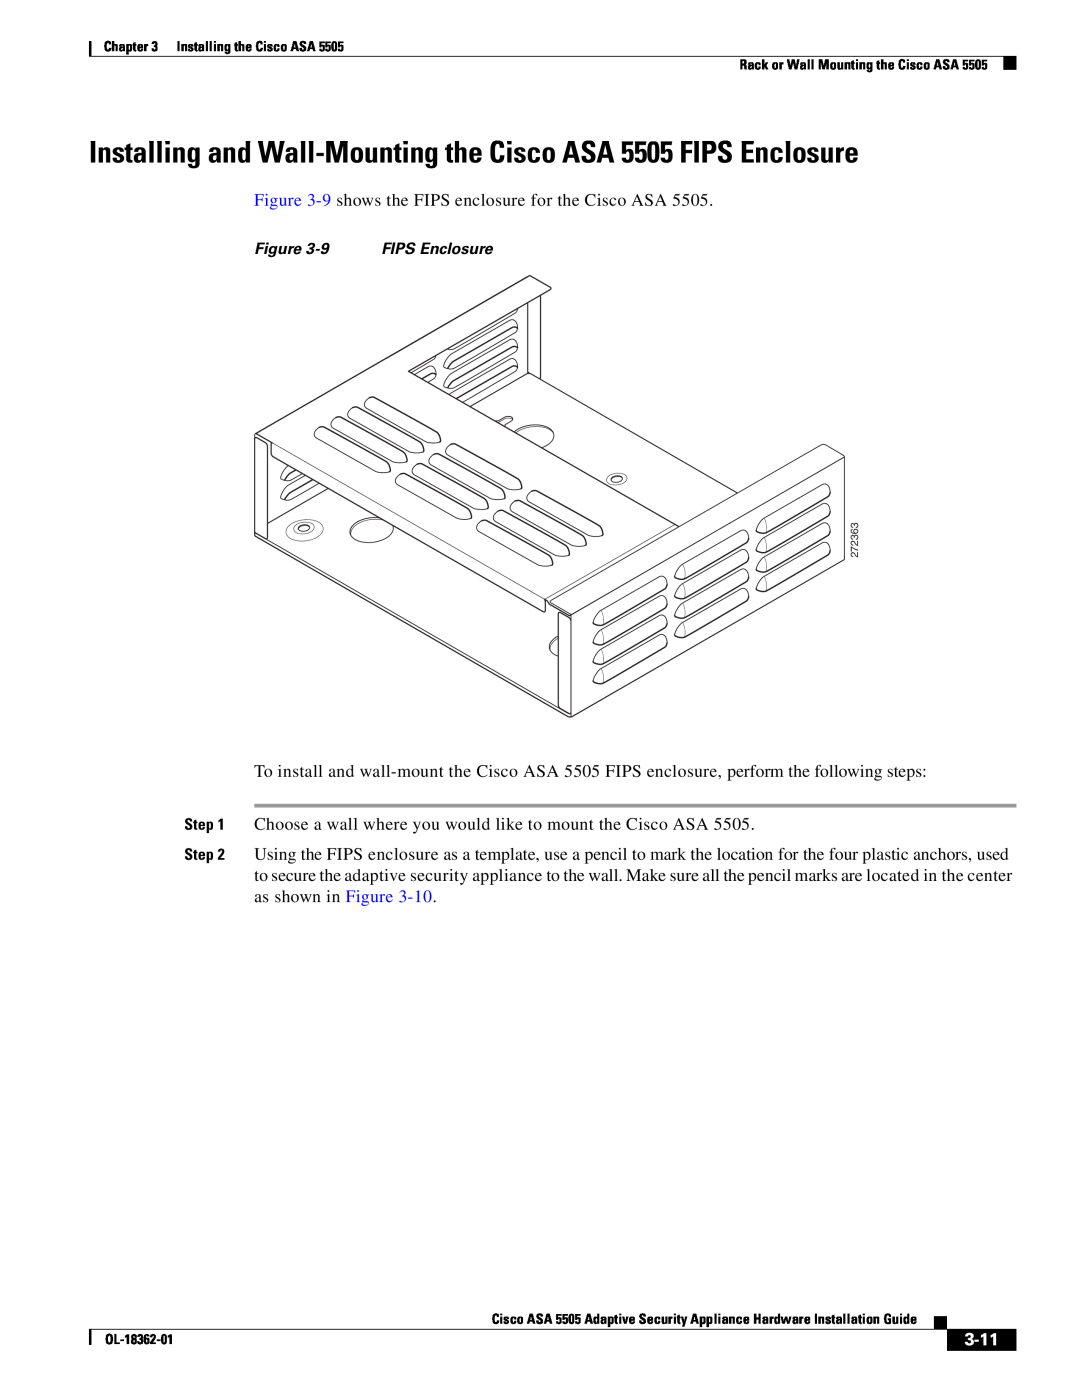 Cisco Systems ASA 5505BUNK9, ASA5505BUNK9, ASA5505K8RF manual 3-11, Figure, FIPS Enclosure 